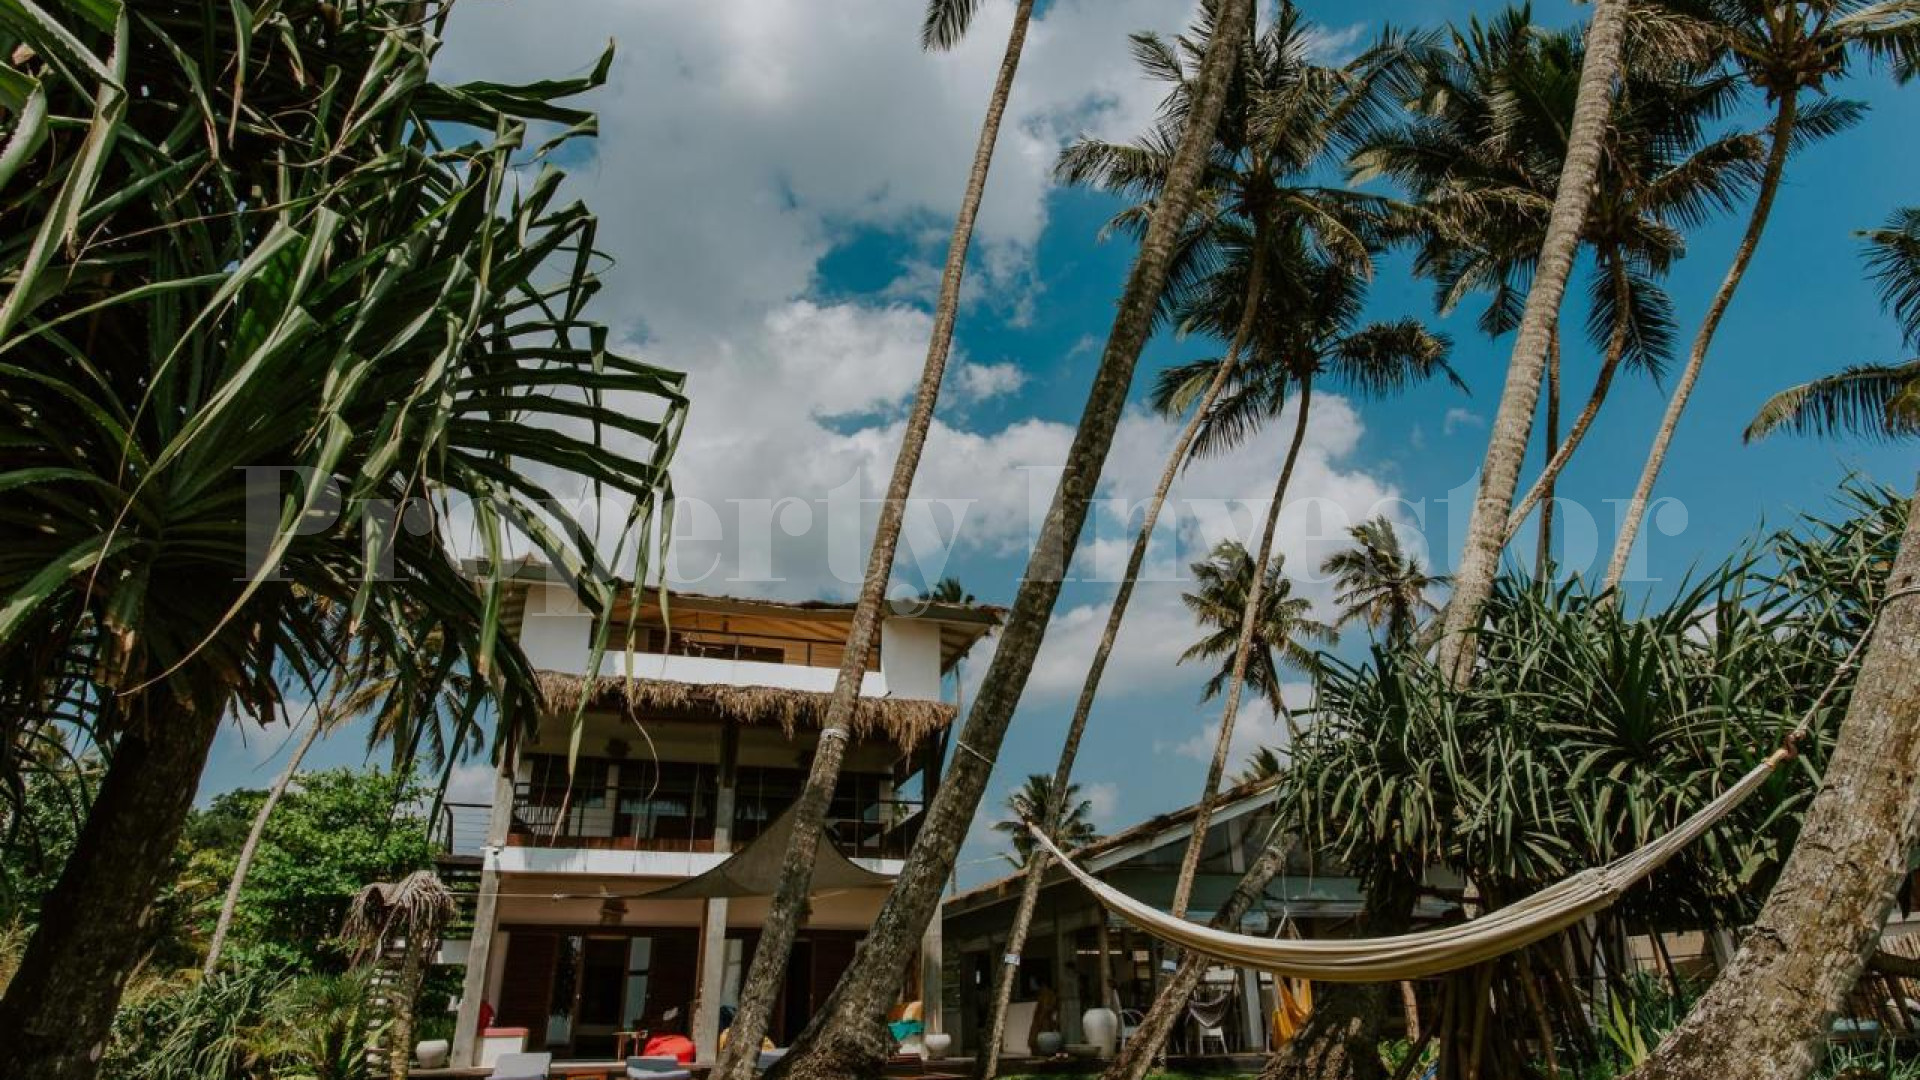 Продаётся превосходный бутик-отель на 10 номеров на Шри-Ланке